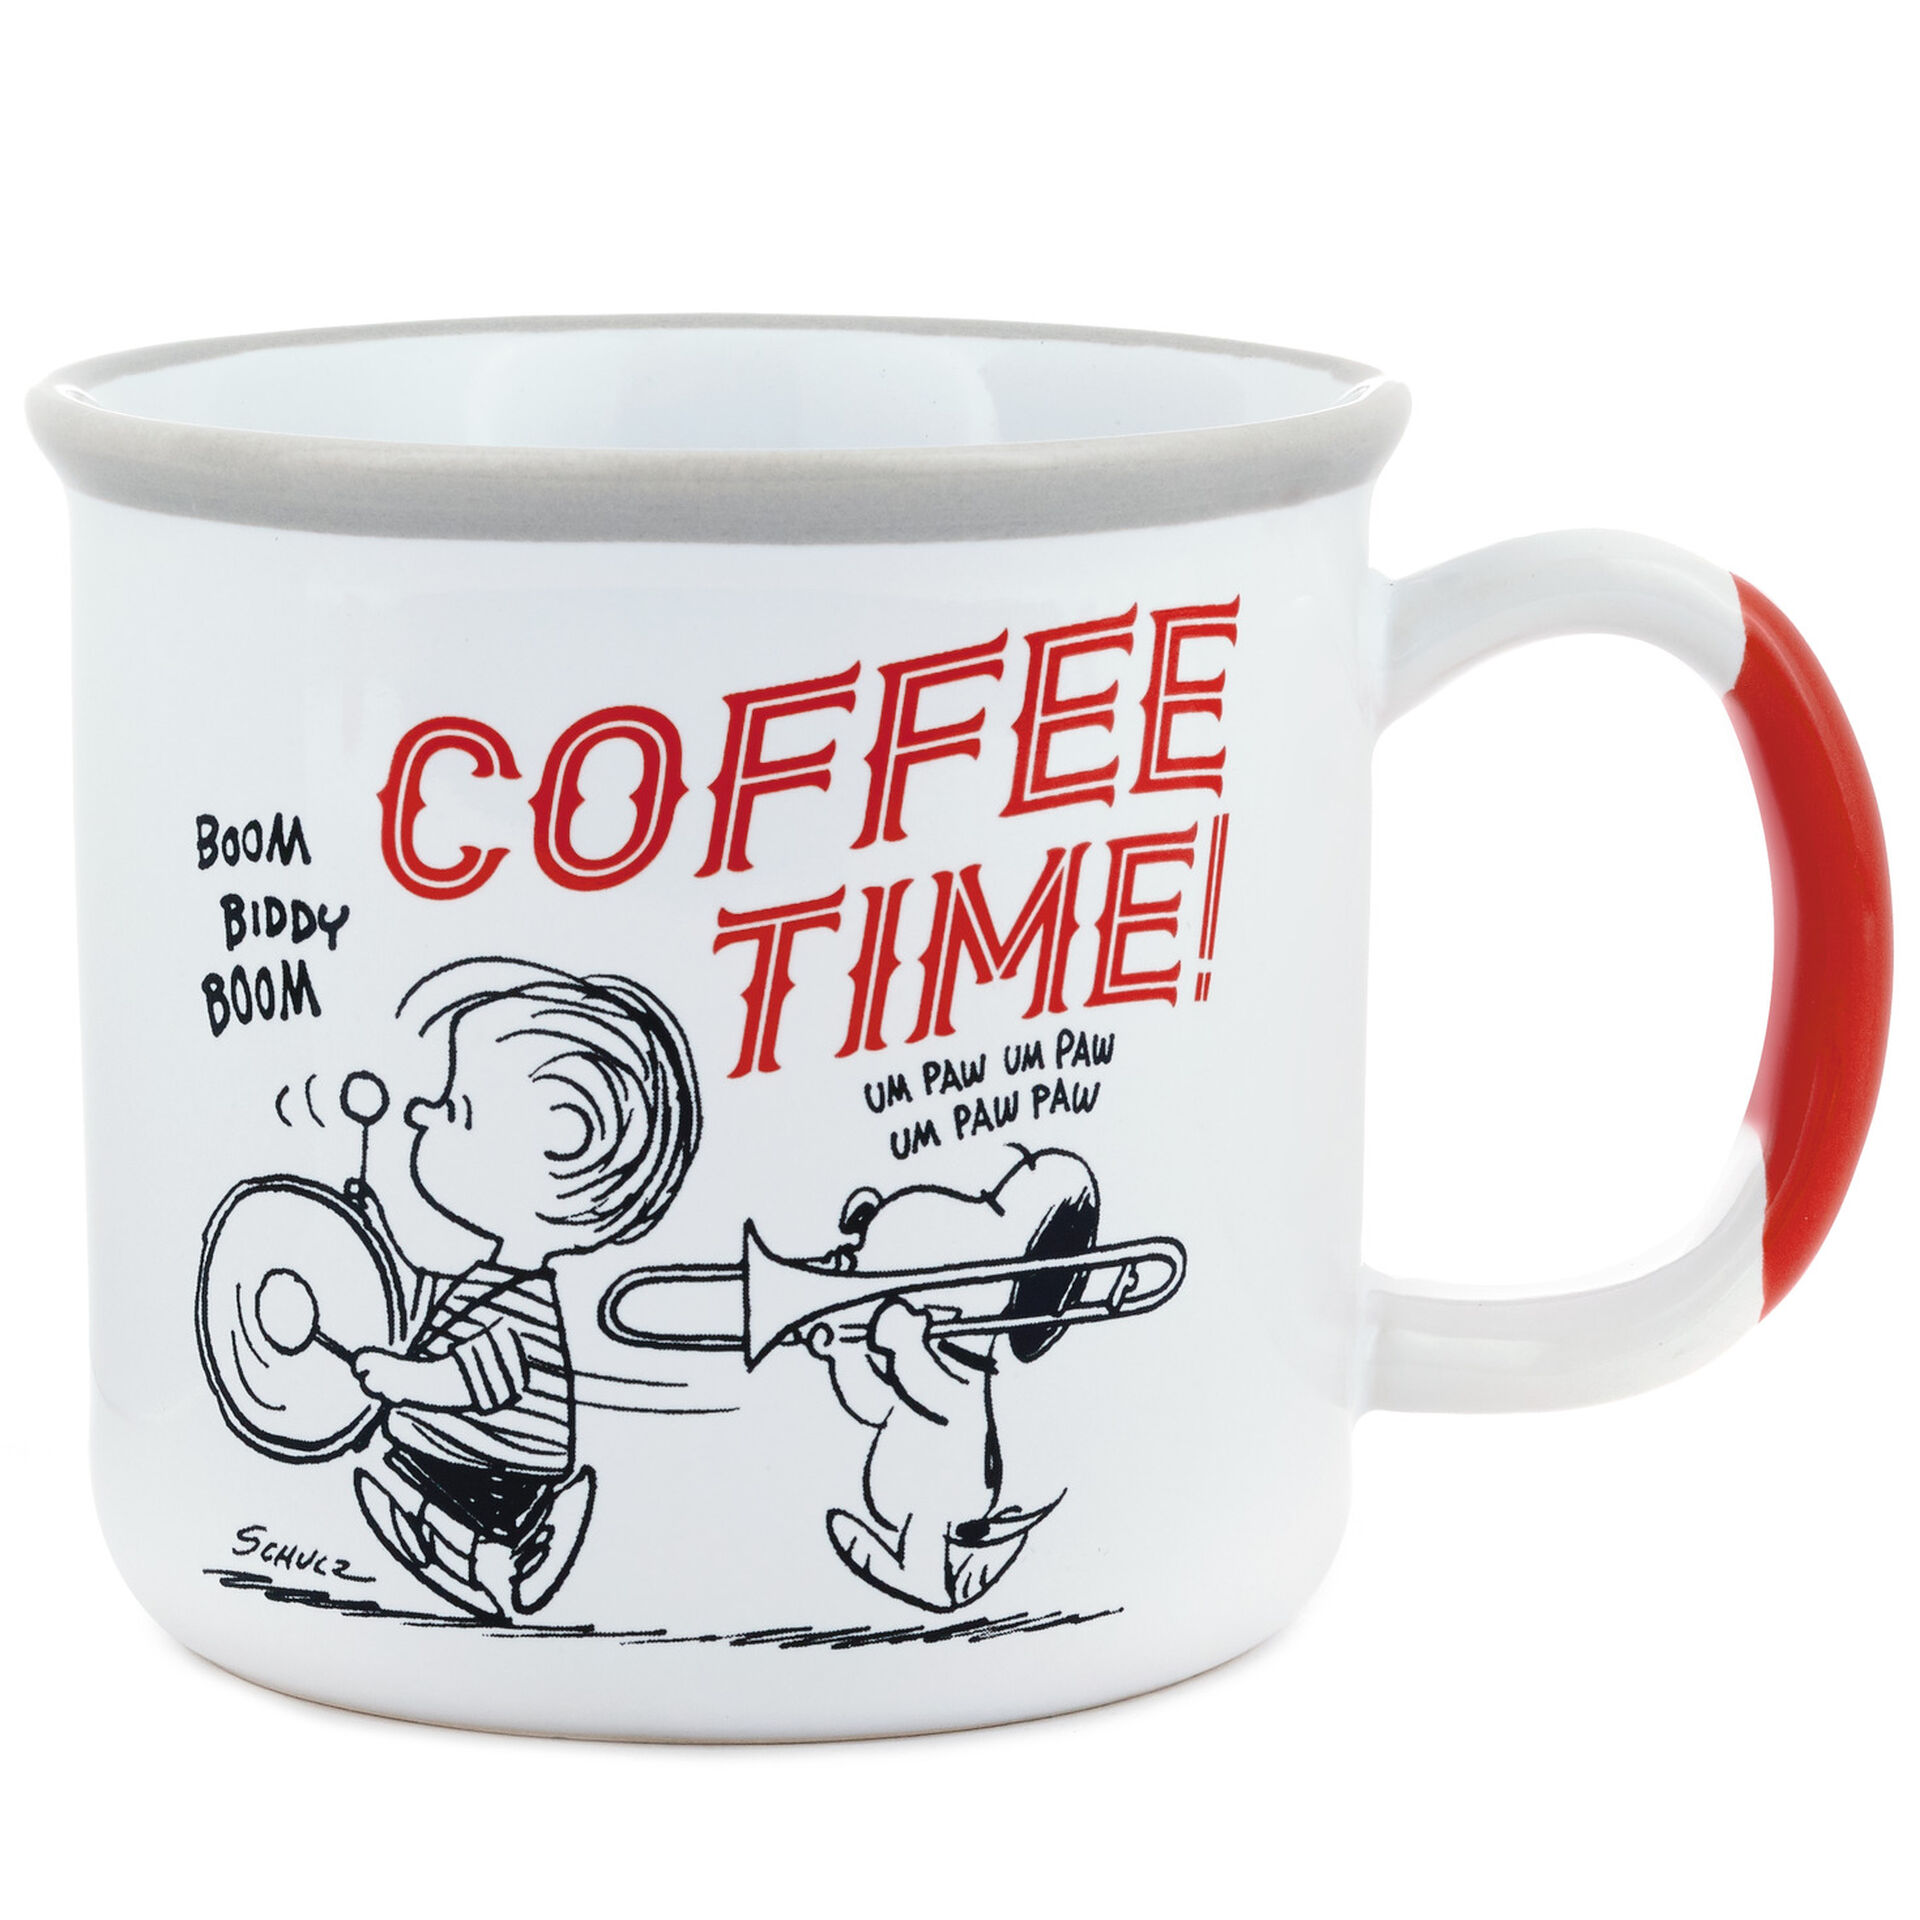 Snoopy Autumn Birthday Christmas Gift White Mug Coffee Tea Cup Mug 